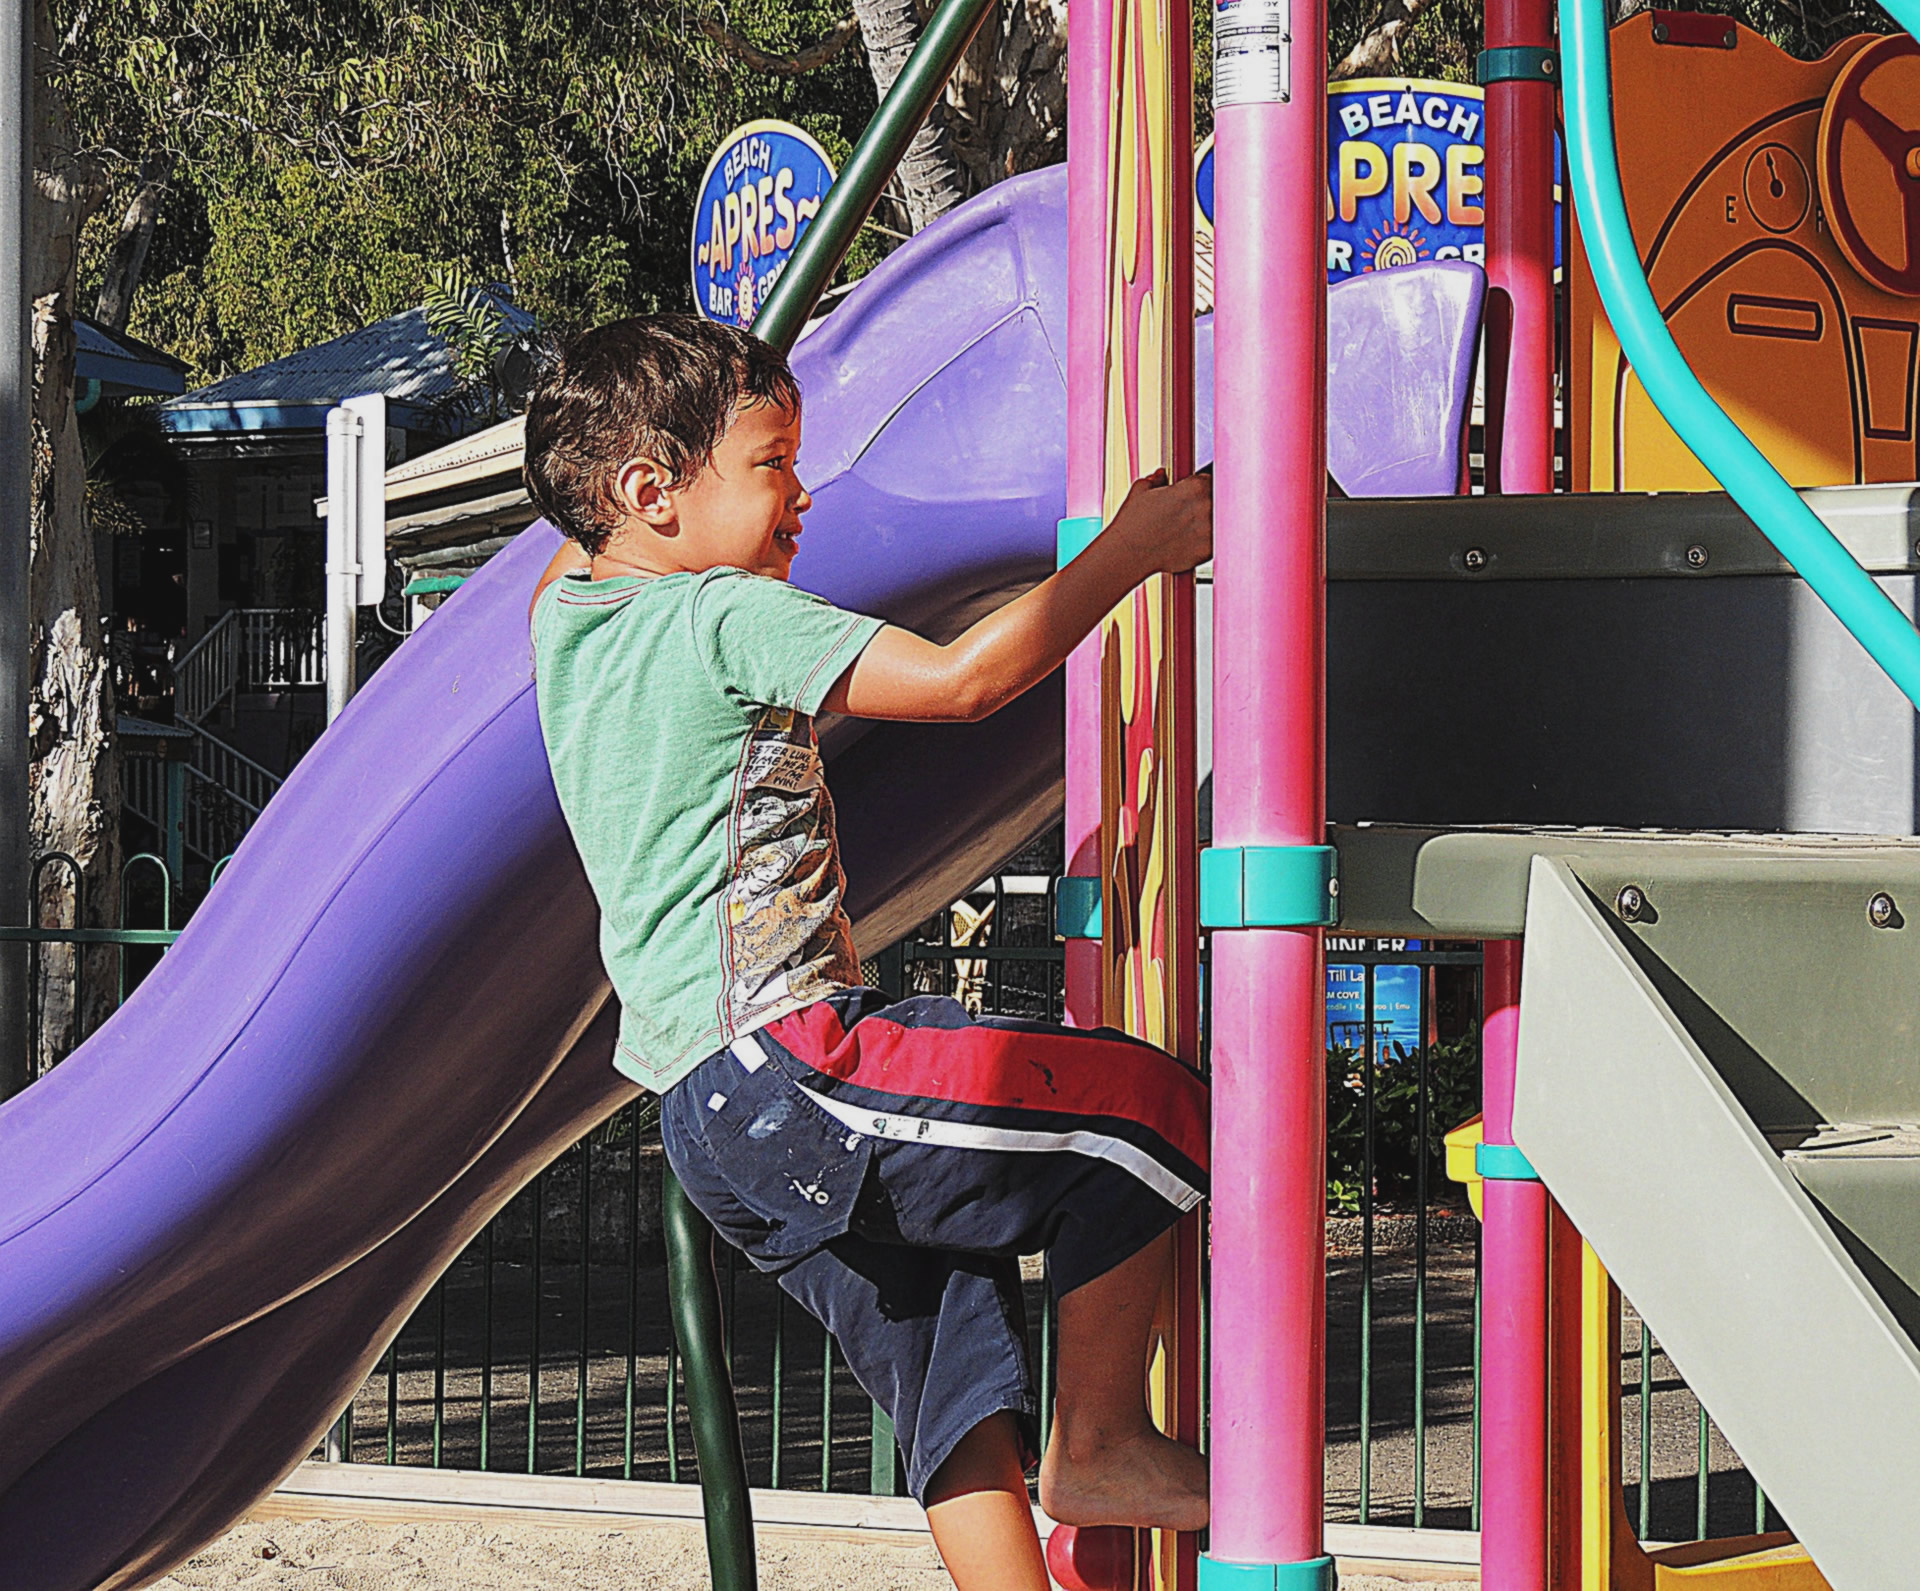 Child Climbing at Playground